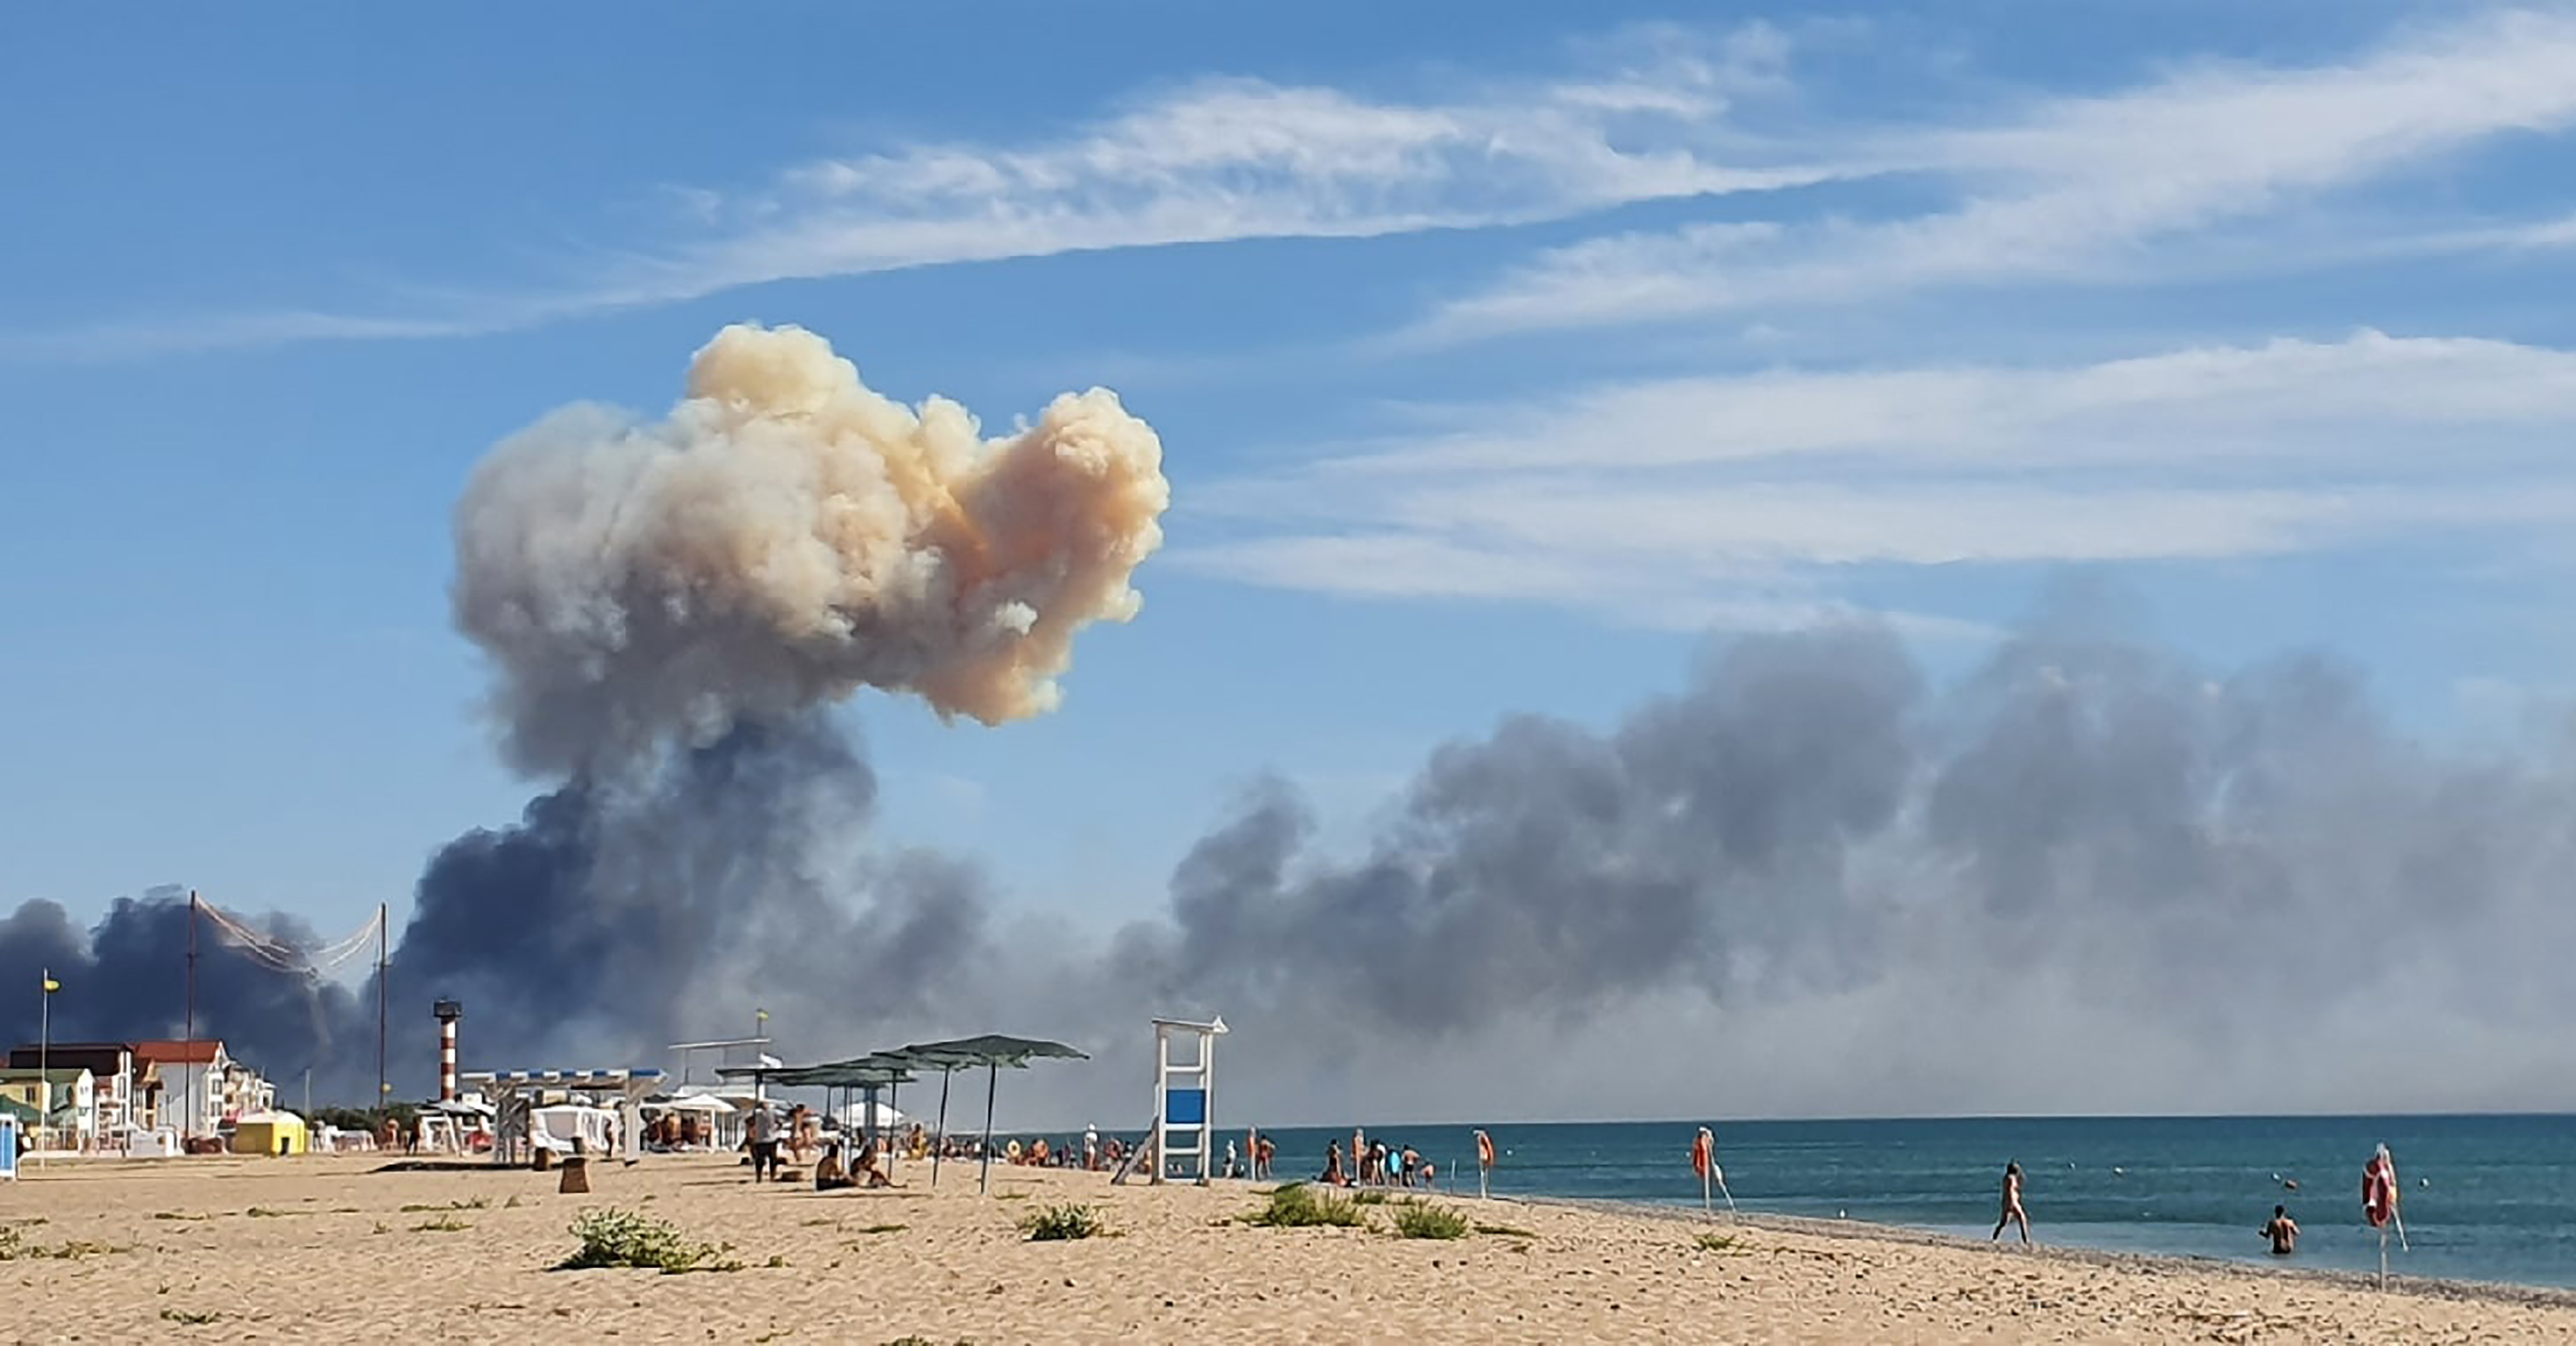 El humo ascendente se puede ver desde la playa de Saky después de que se escucharan explosiones desde la dirección de una base aérea militar rusa cerca de Novofedorivka, Crimea, martes 9 de agosto de 2022. (UGC vía AP)